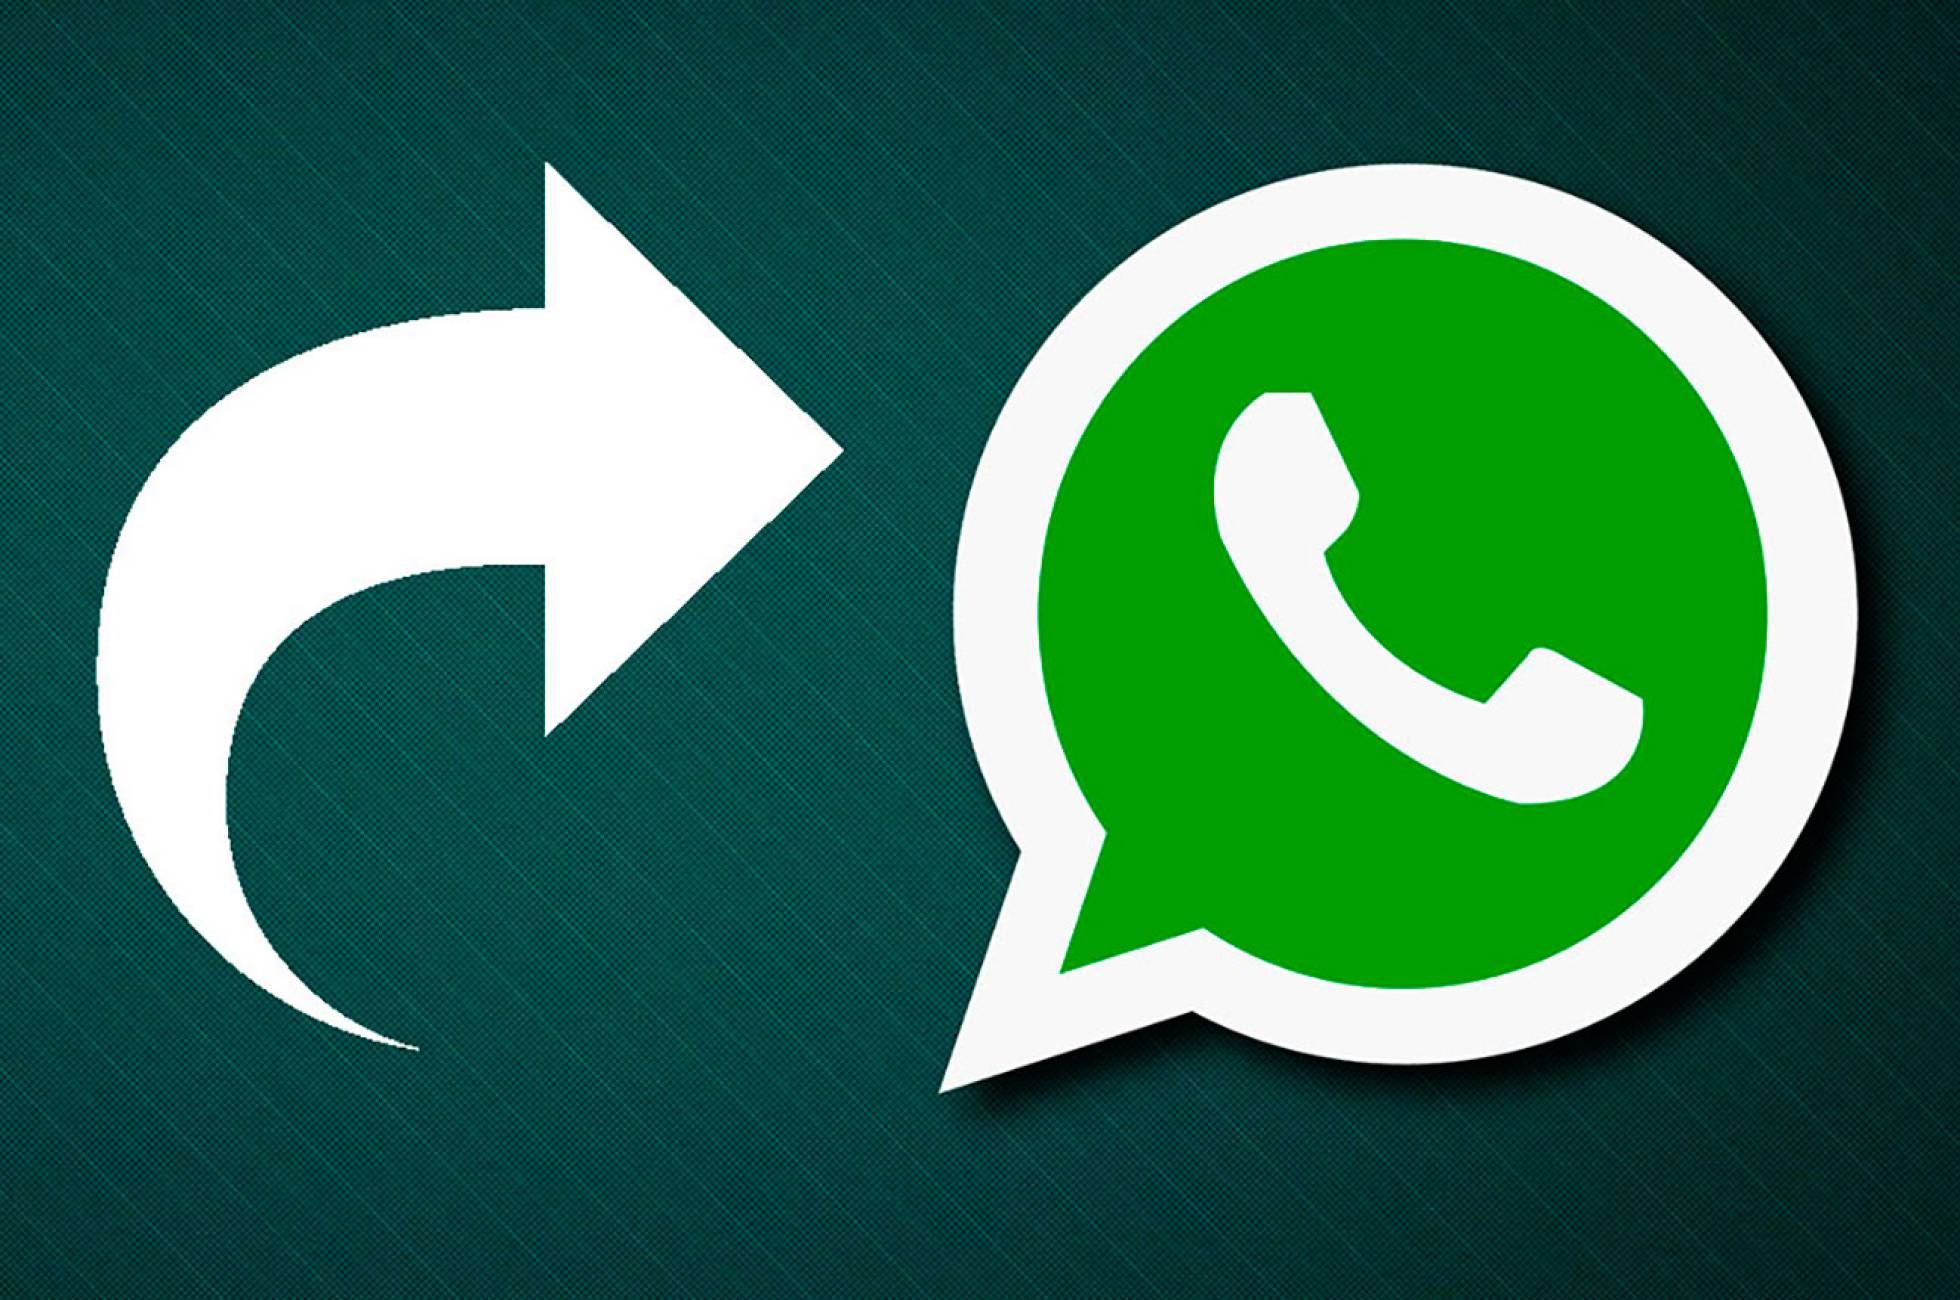 Convierte archivos para compartirlos en WhatsApp sin perder calidad.